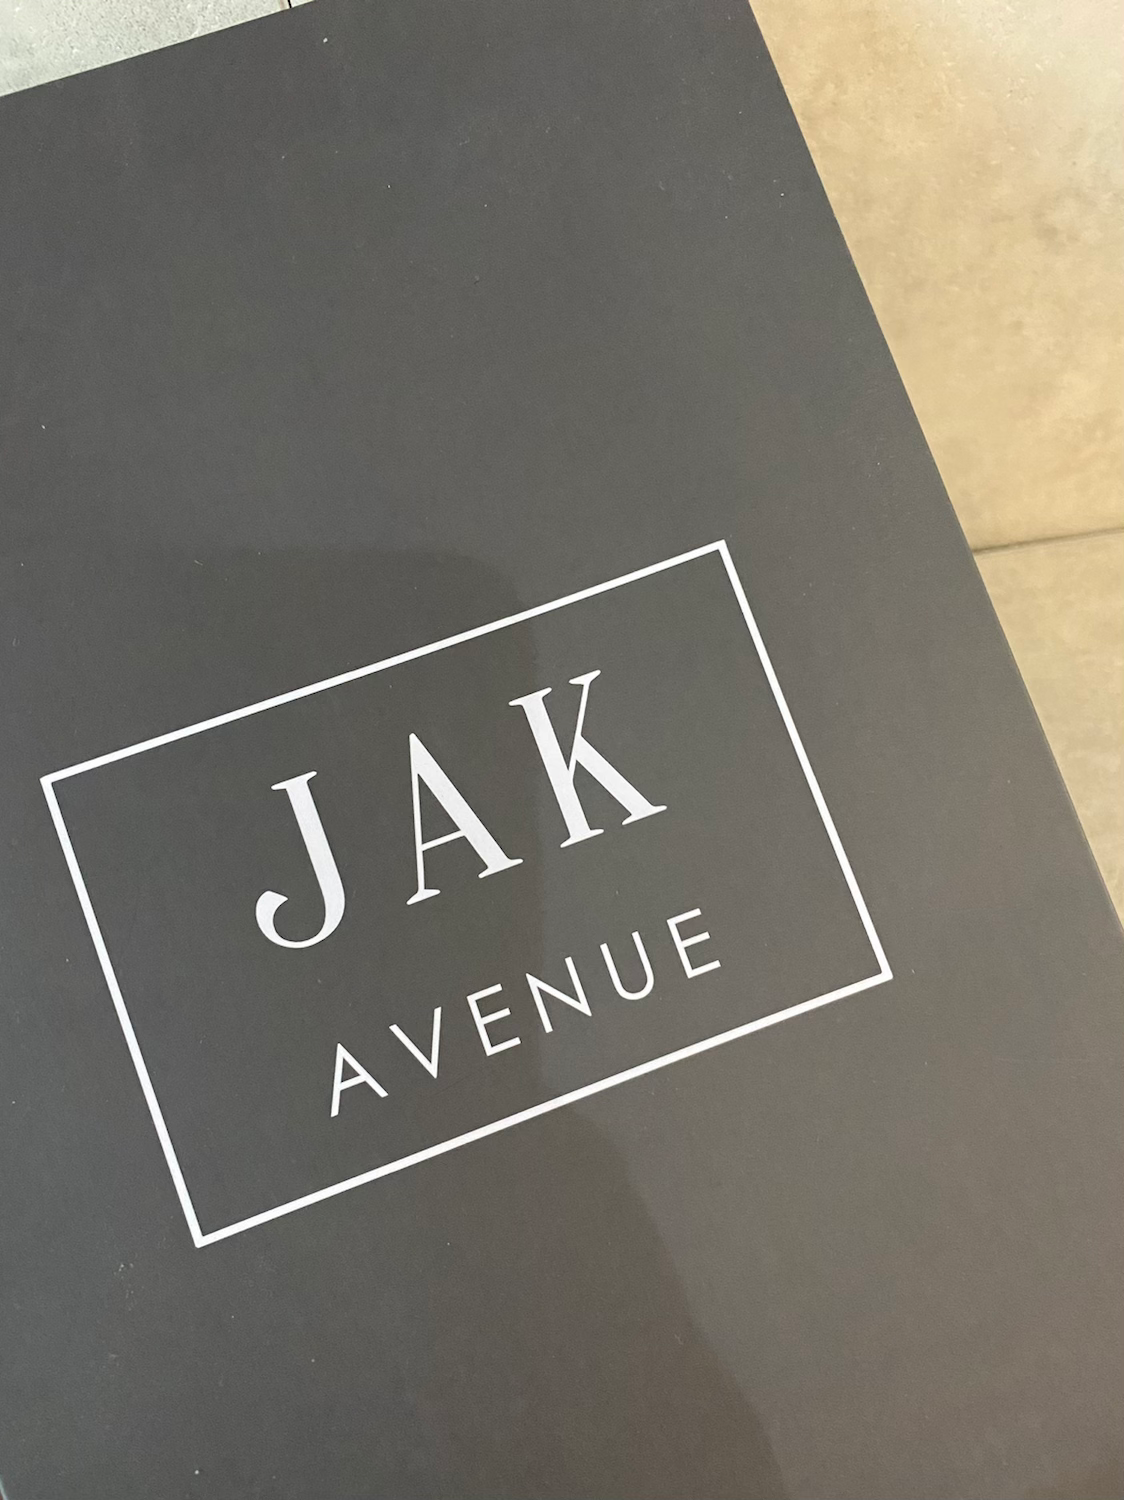 Books & Boxes – JAK Avenue